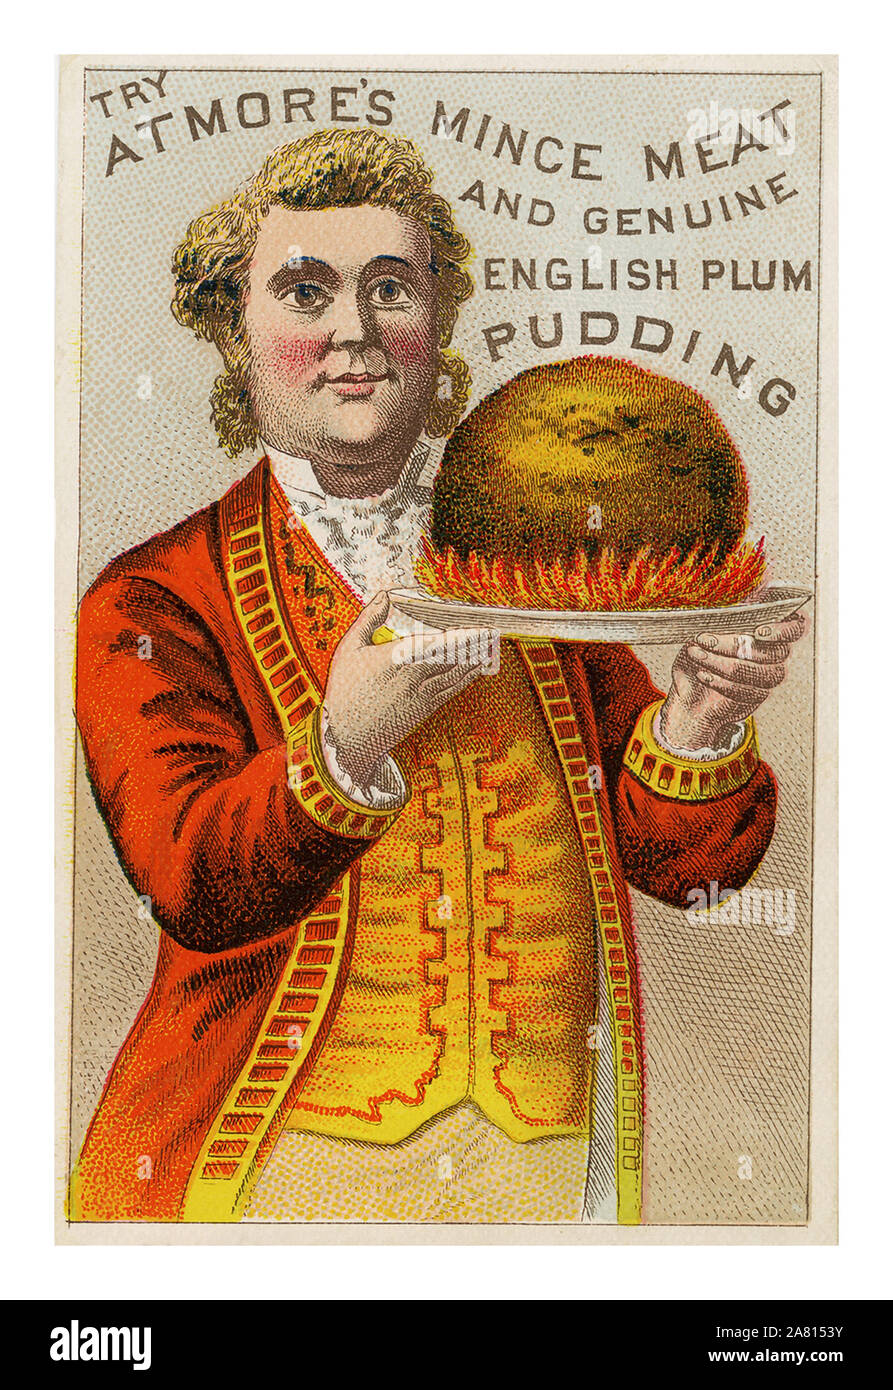 Jahrgang 1800's Christmas Plum Pudding viktorianischen Trade Promotion Werbung Atmore Hackfleisch und echten englischen Plum Pudding. Der Mann mit den brennenden Plum Pudding ist in einem hellen Gelb und Rot Weste und Jacke als Kellner servieren gekleidet Stockfoto